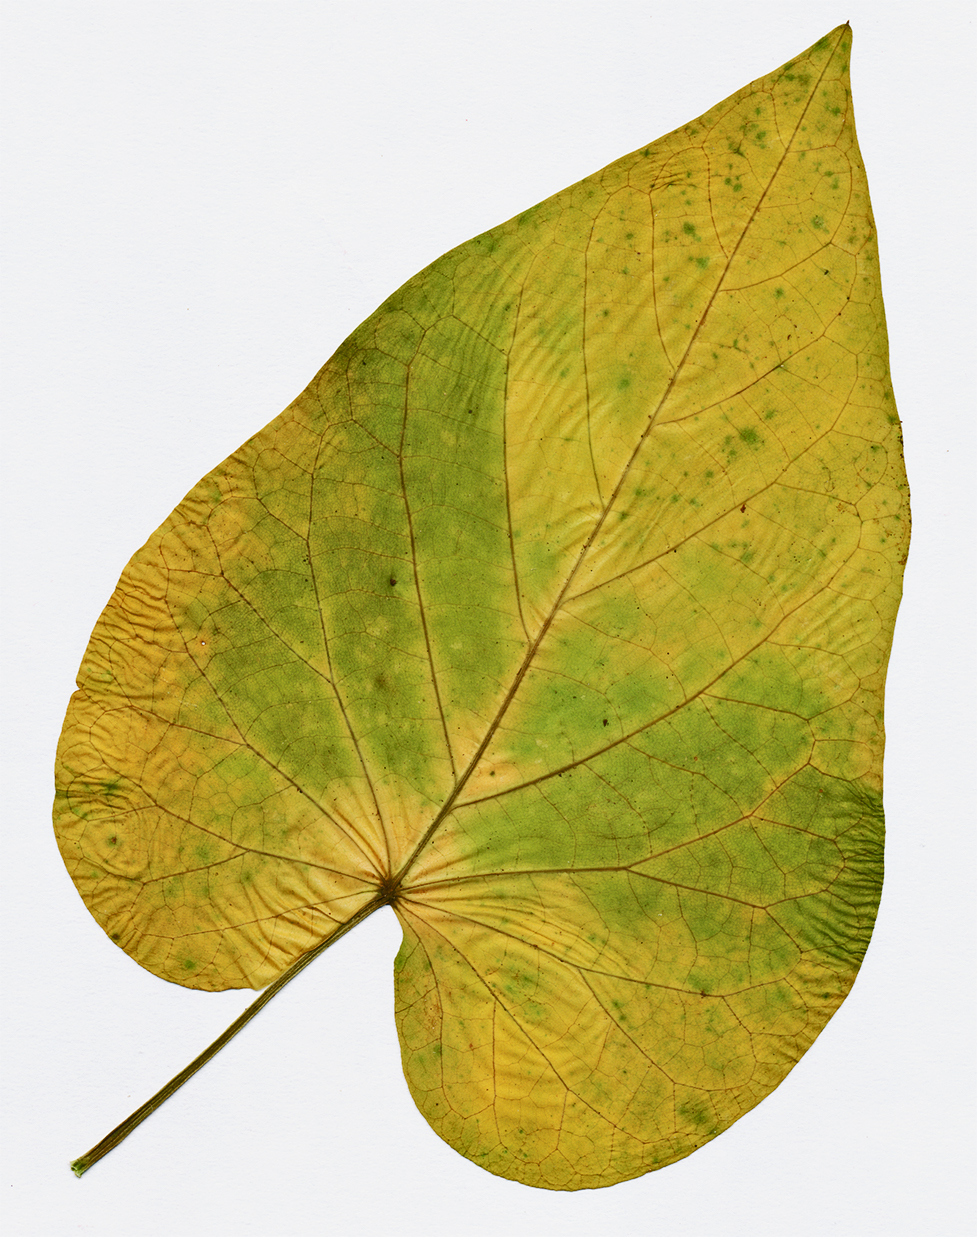 redbud leaf dry 28 dec 21